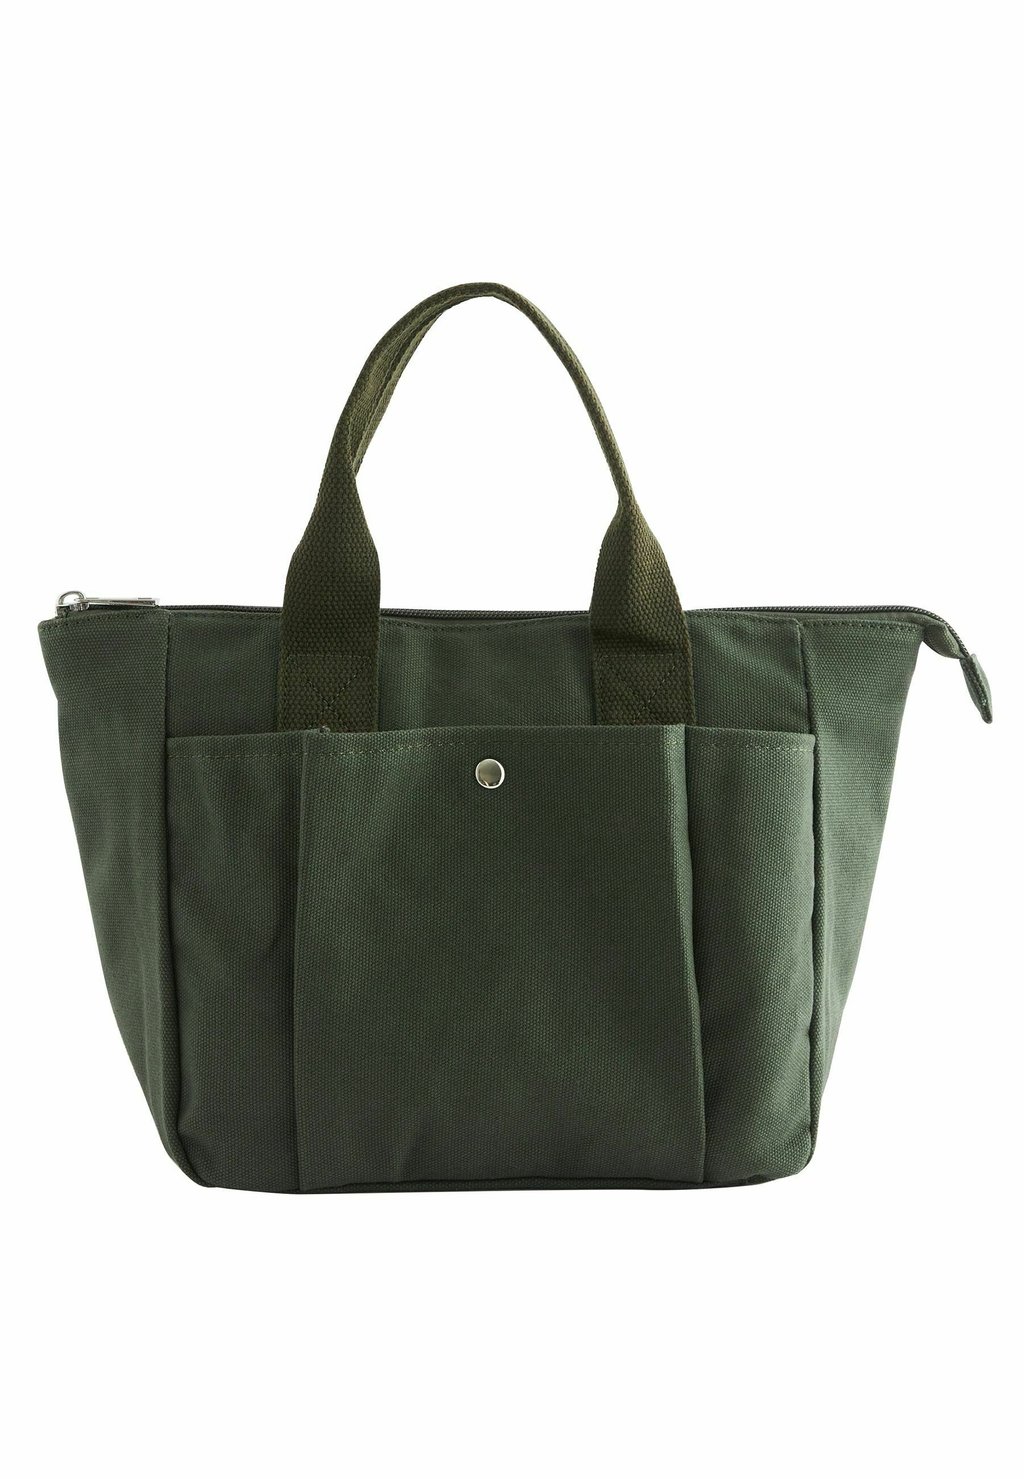 Ручная сумка Handheld Bag Next, цвет khaki green